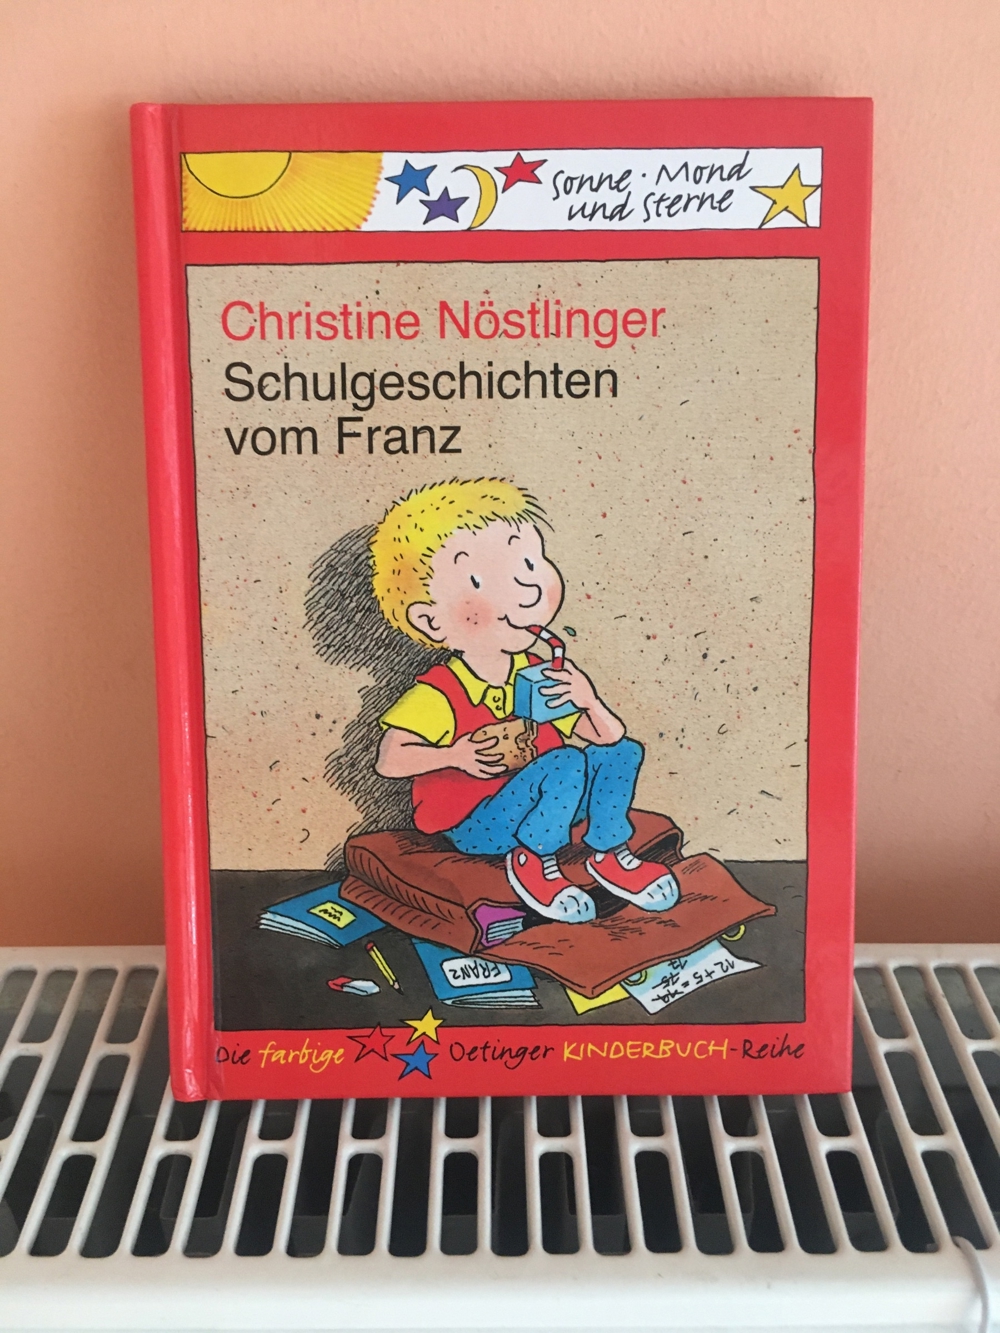 Schulgeschichten vom Franz - Kinderbuch